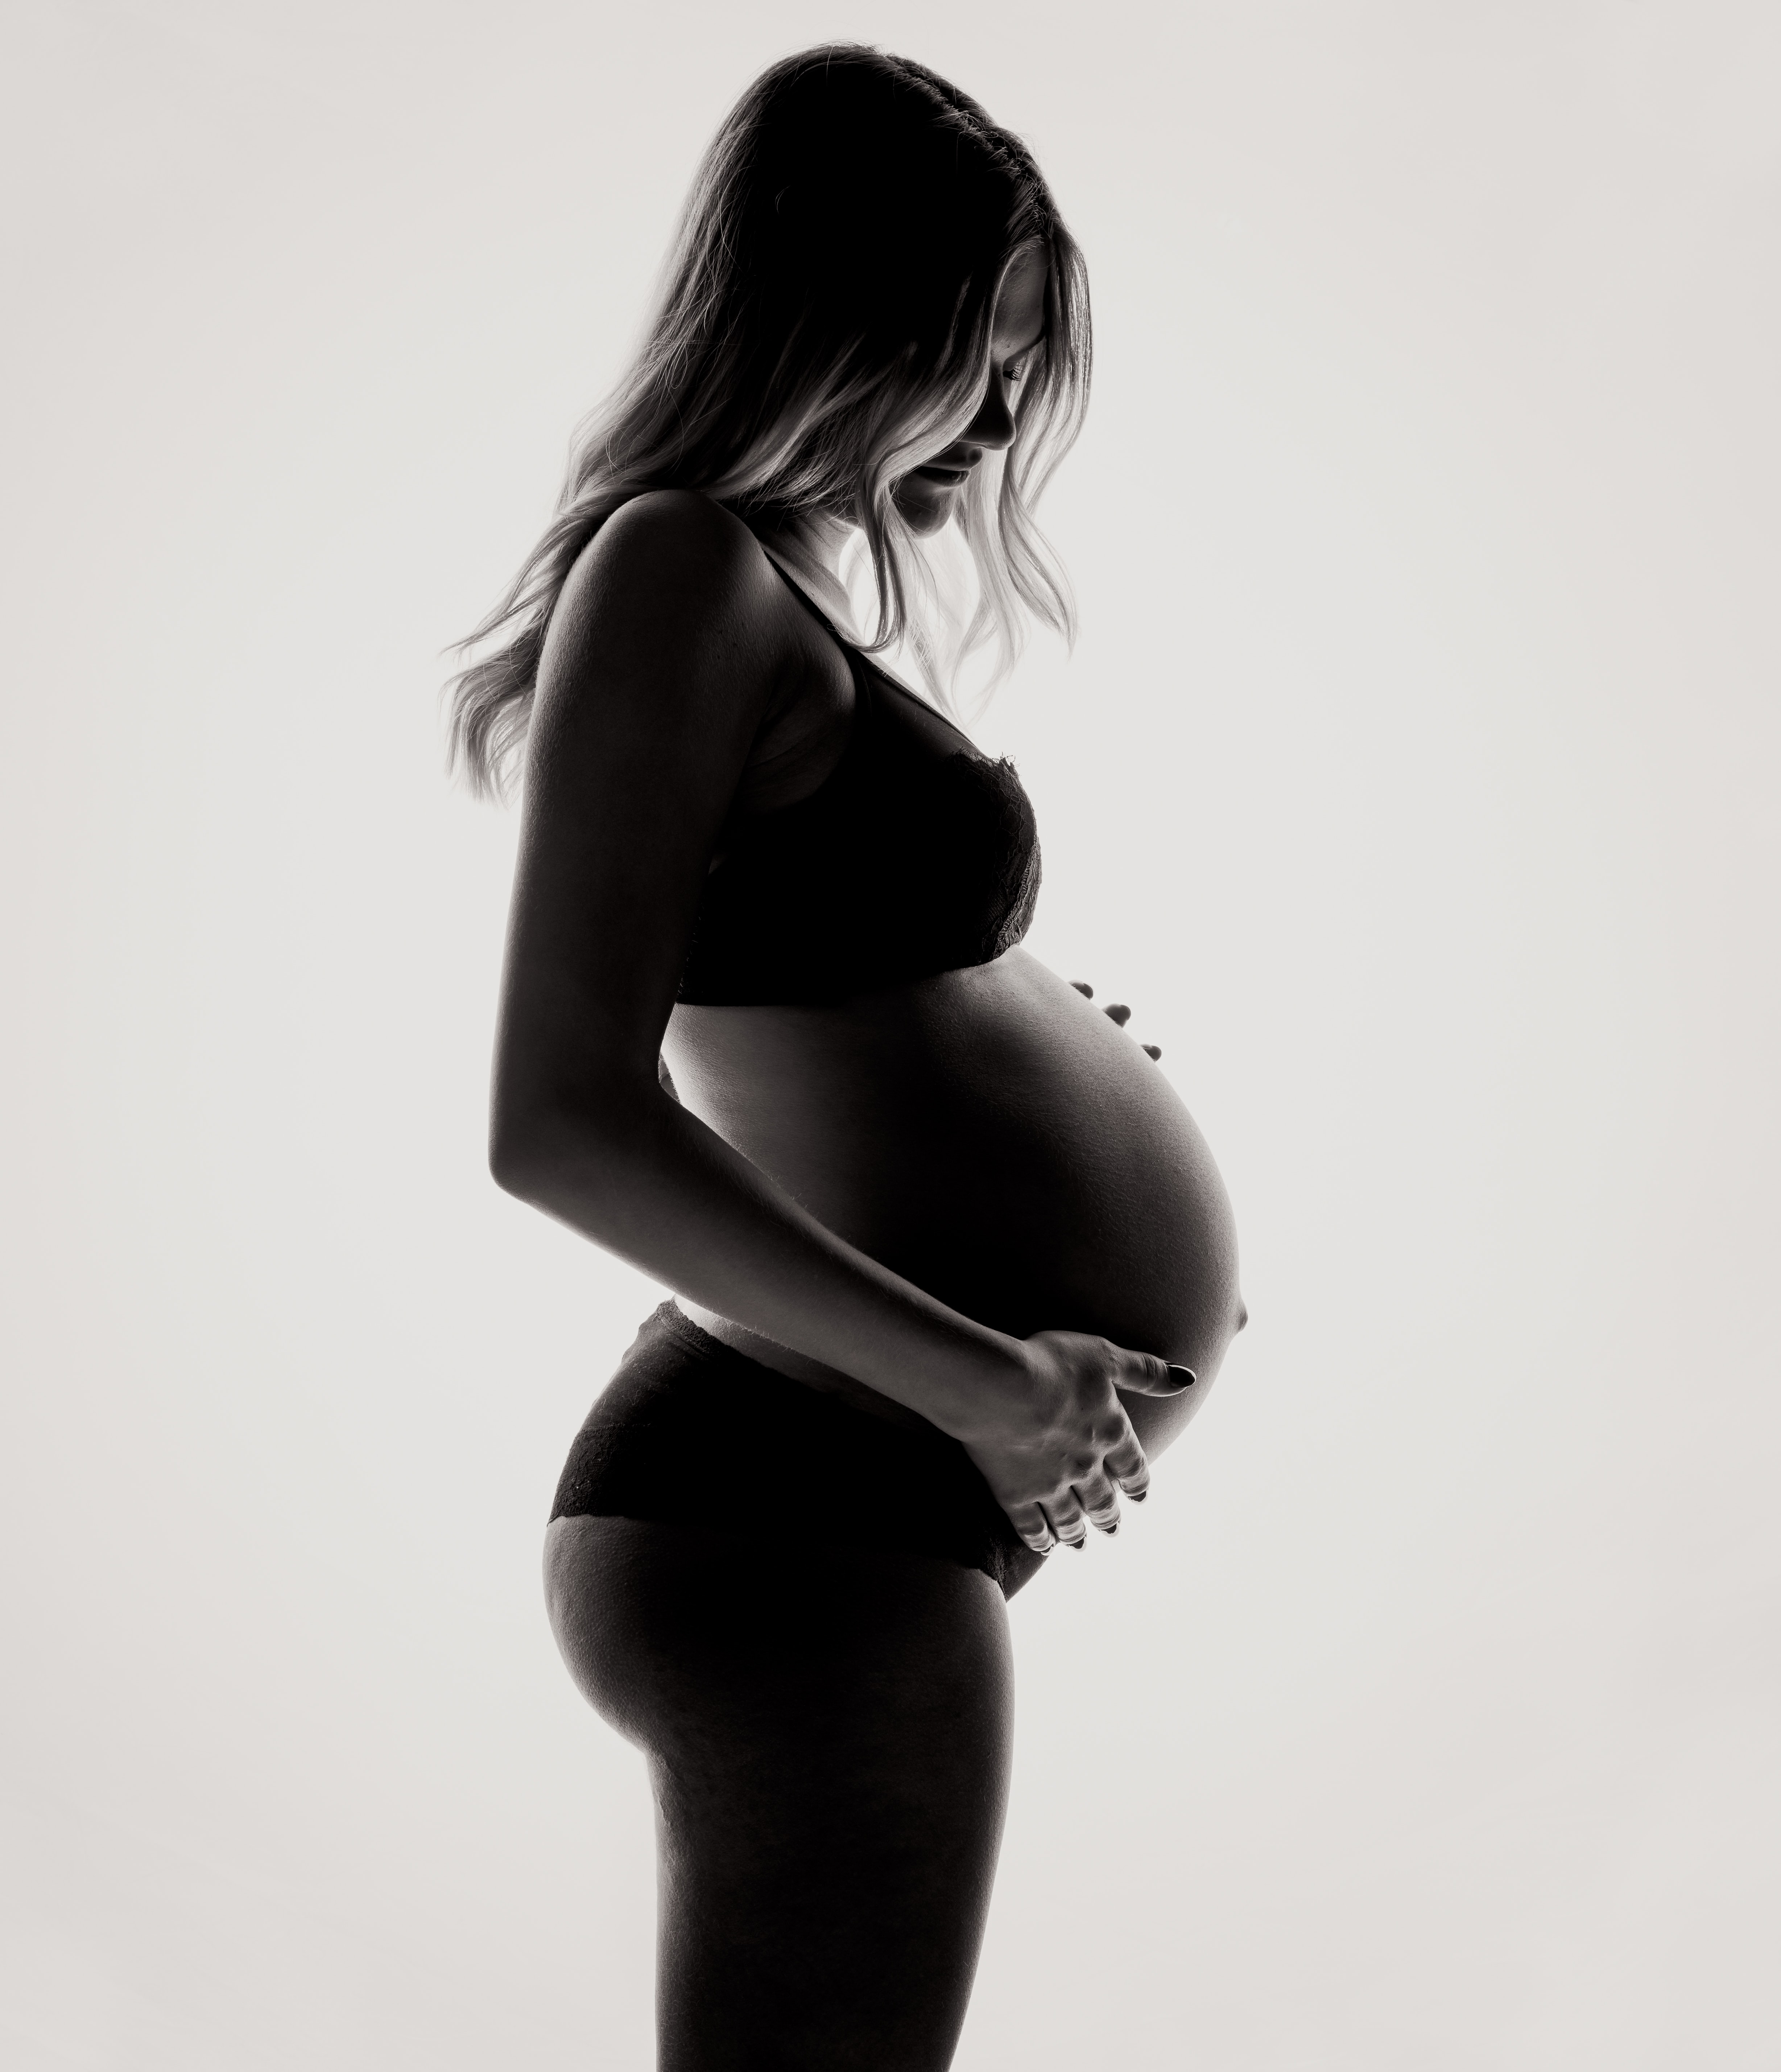 zwangerschap zwanger begeleiding bekkenpijn fertiliteit osteopathie